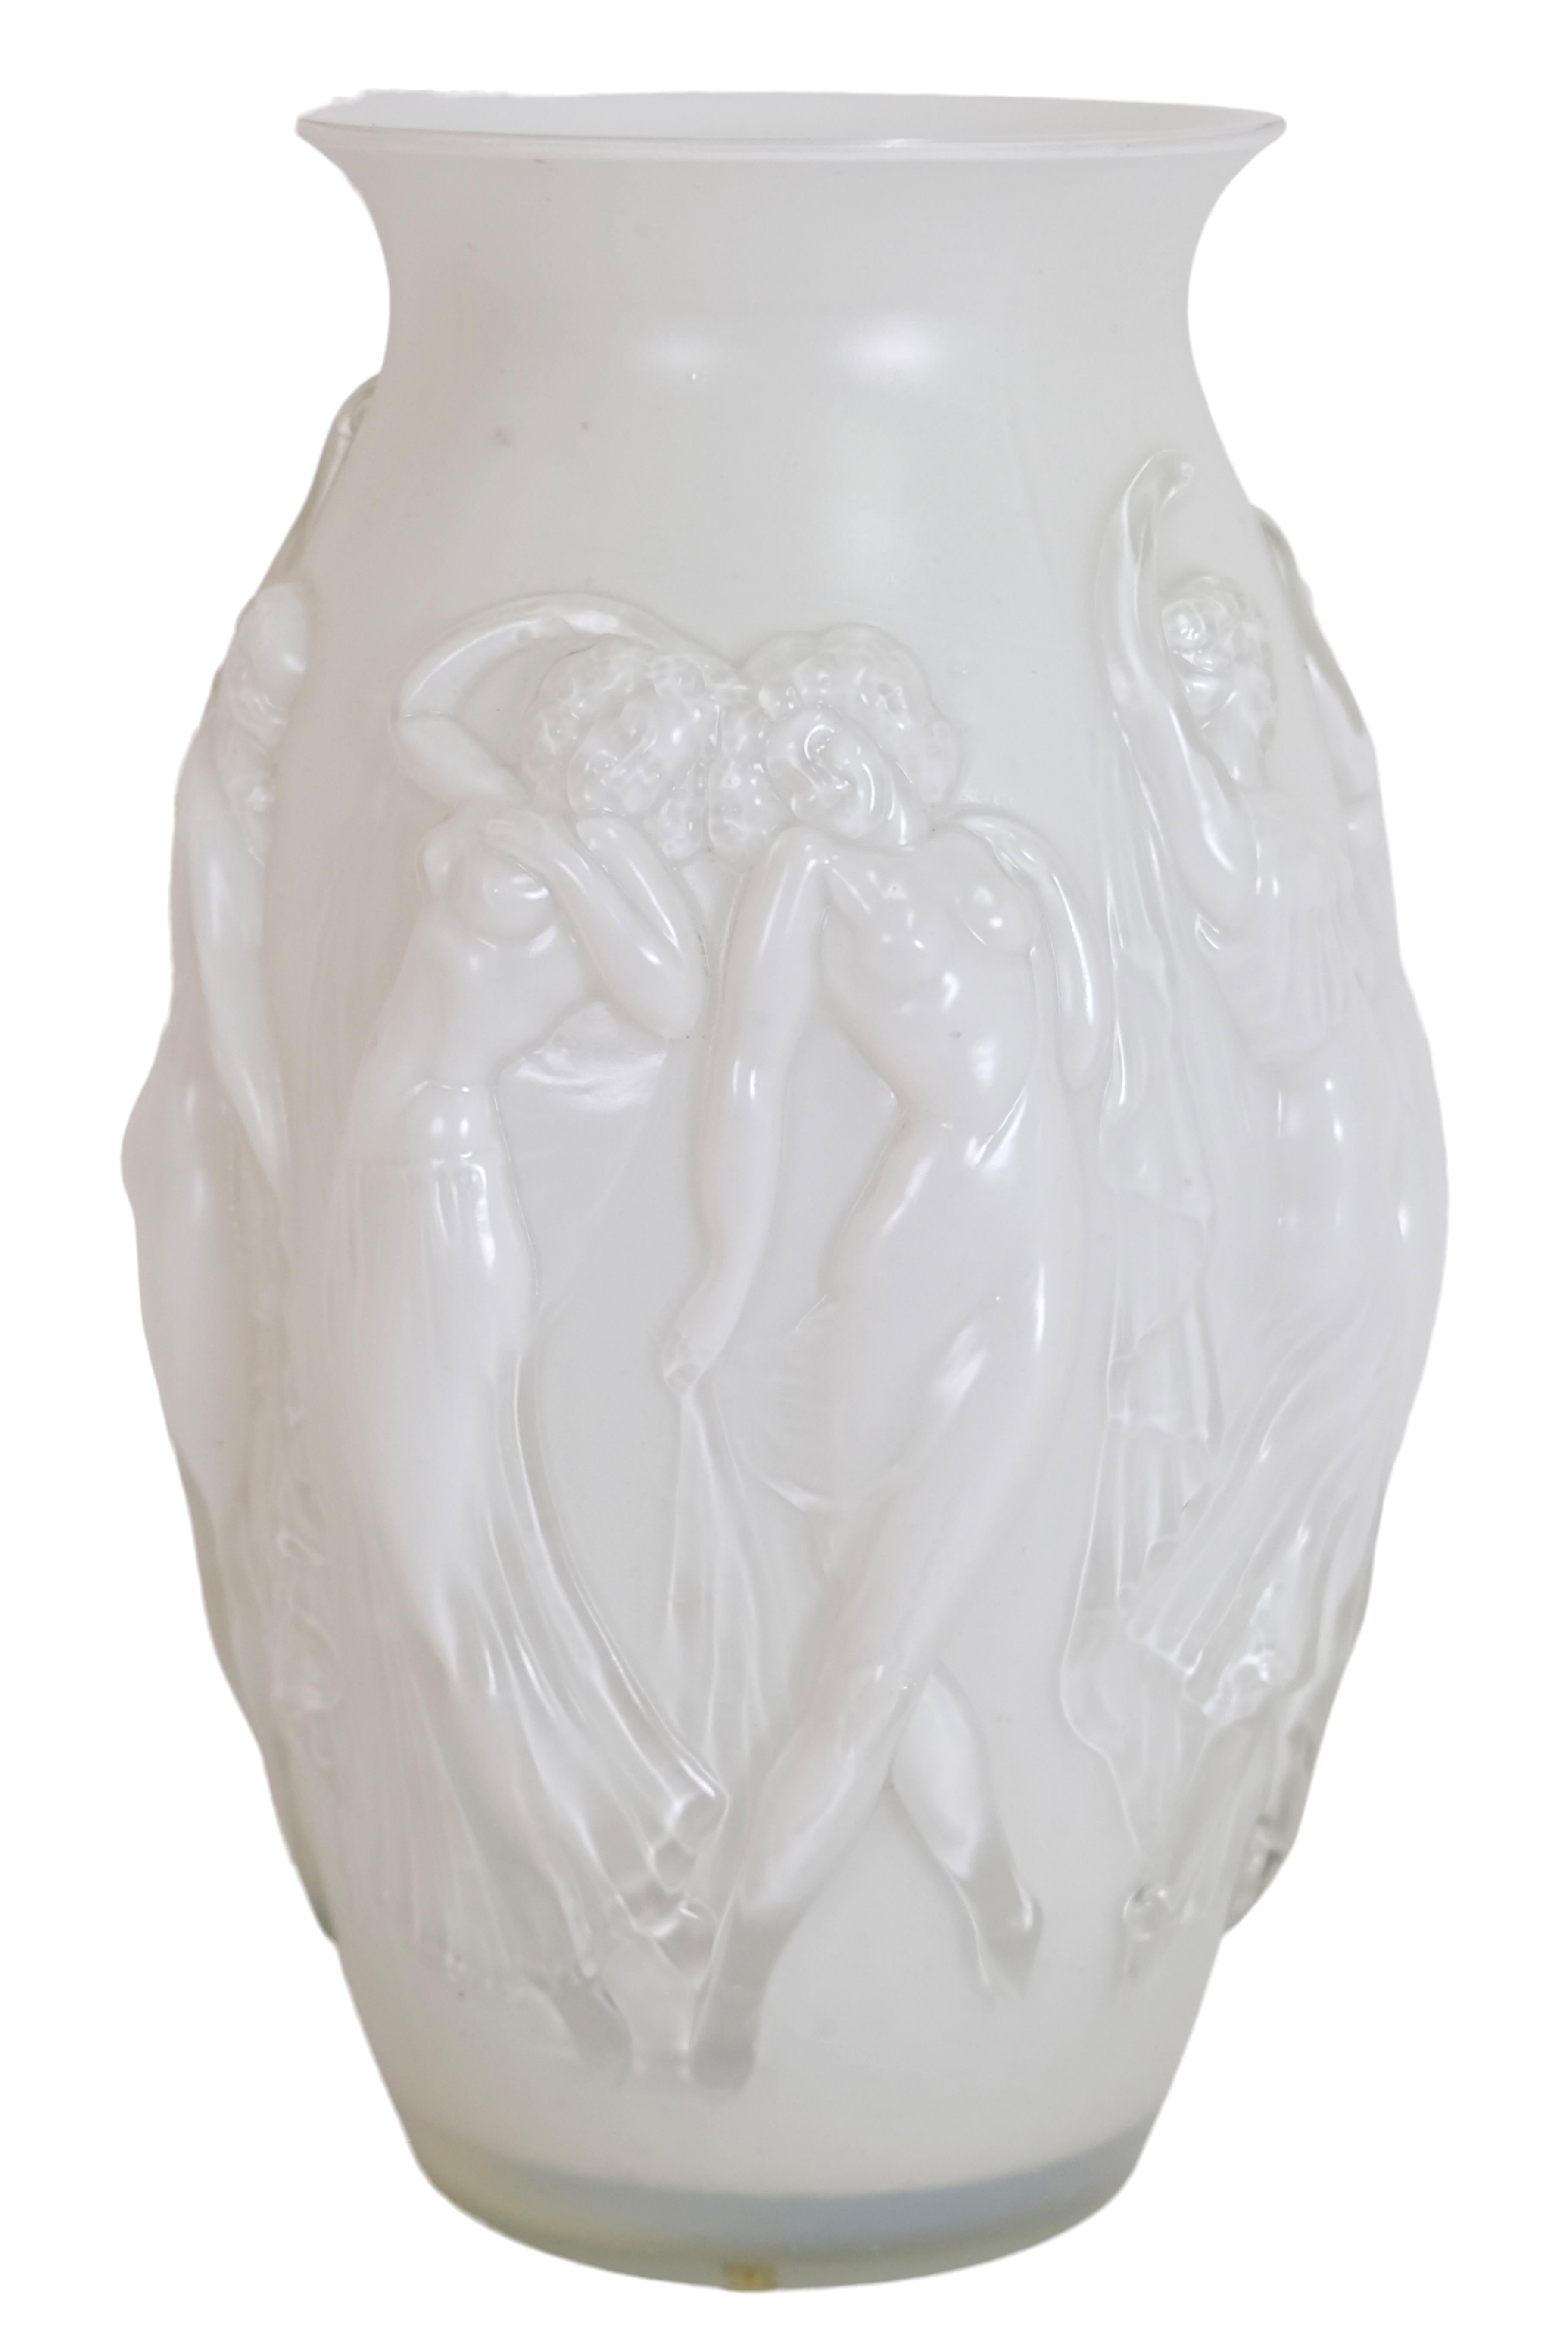 Vase en verre de Sabino 
Des couples de danseurs décorent le vase blanc tout autour.

Original Art Déco, France 1920s 

Dimensions :
Diamètre : 23 cm
Hauteur : 36 cm.